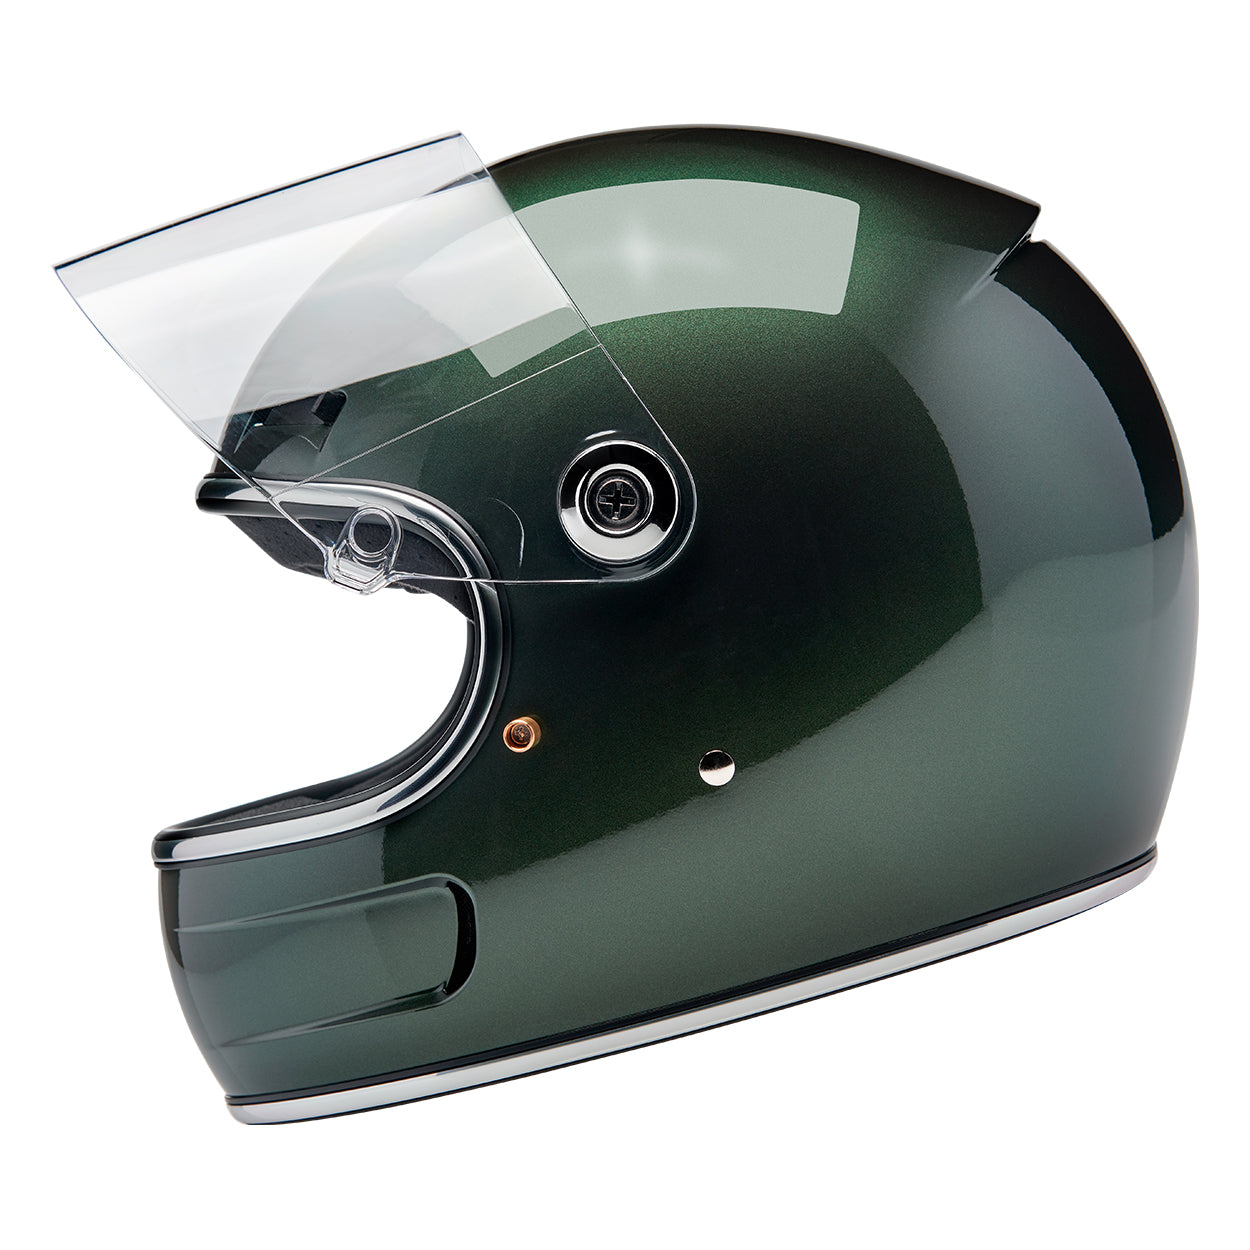 Gringo SV ECE R22.06 Helmet - Metallic Sierra Green